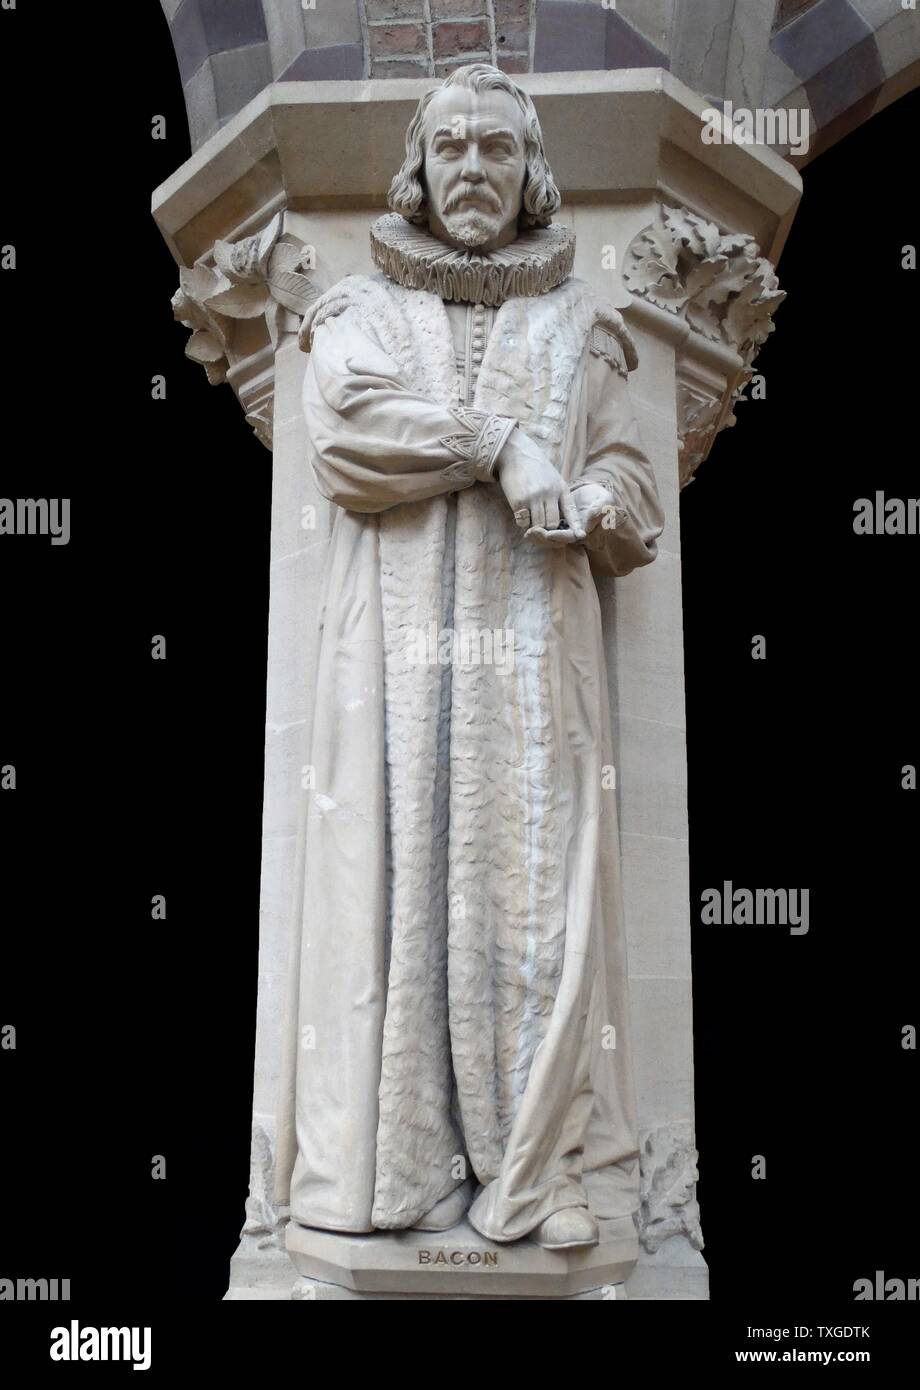 Statue de Roger Bacon (1214-1294) Philosophe anglais et frère franciscain. Datée 2009 Banque D'Images